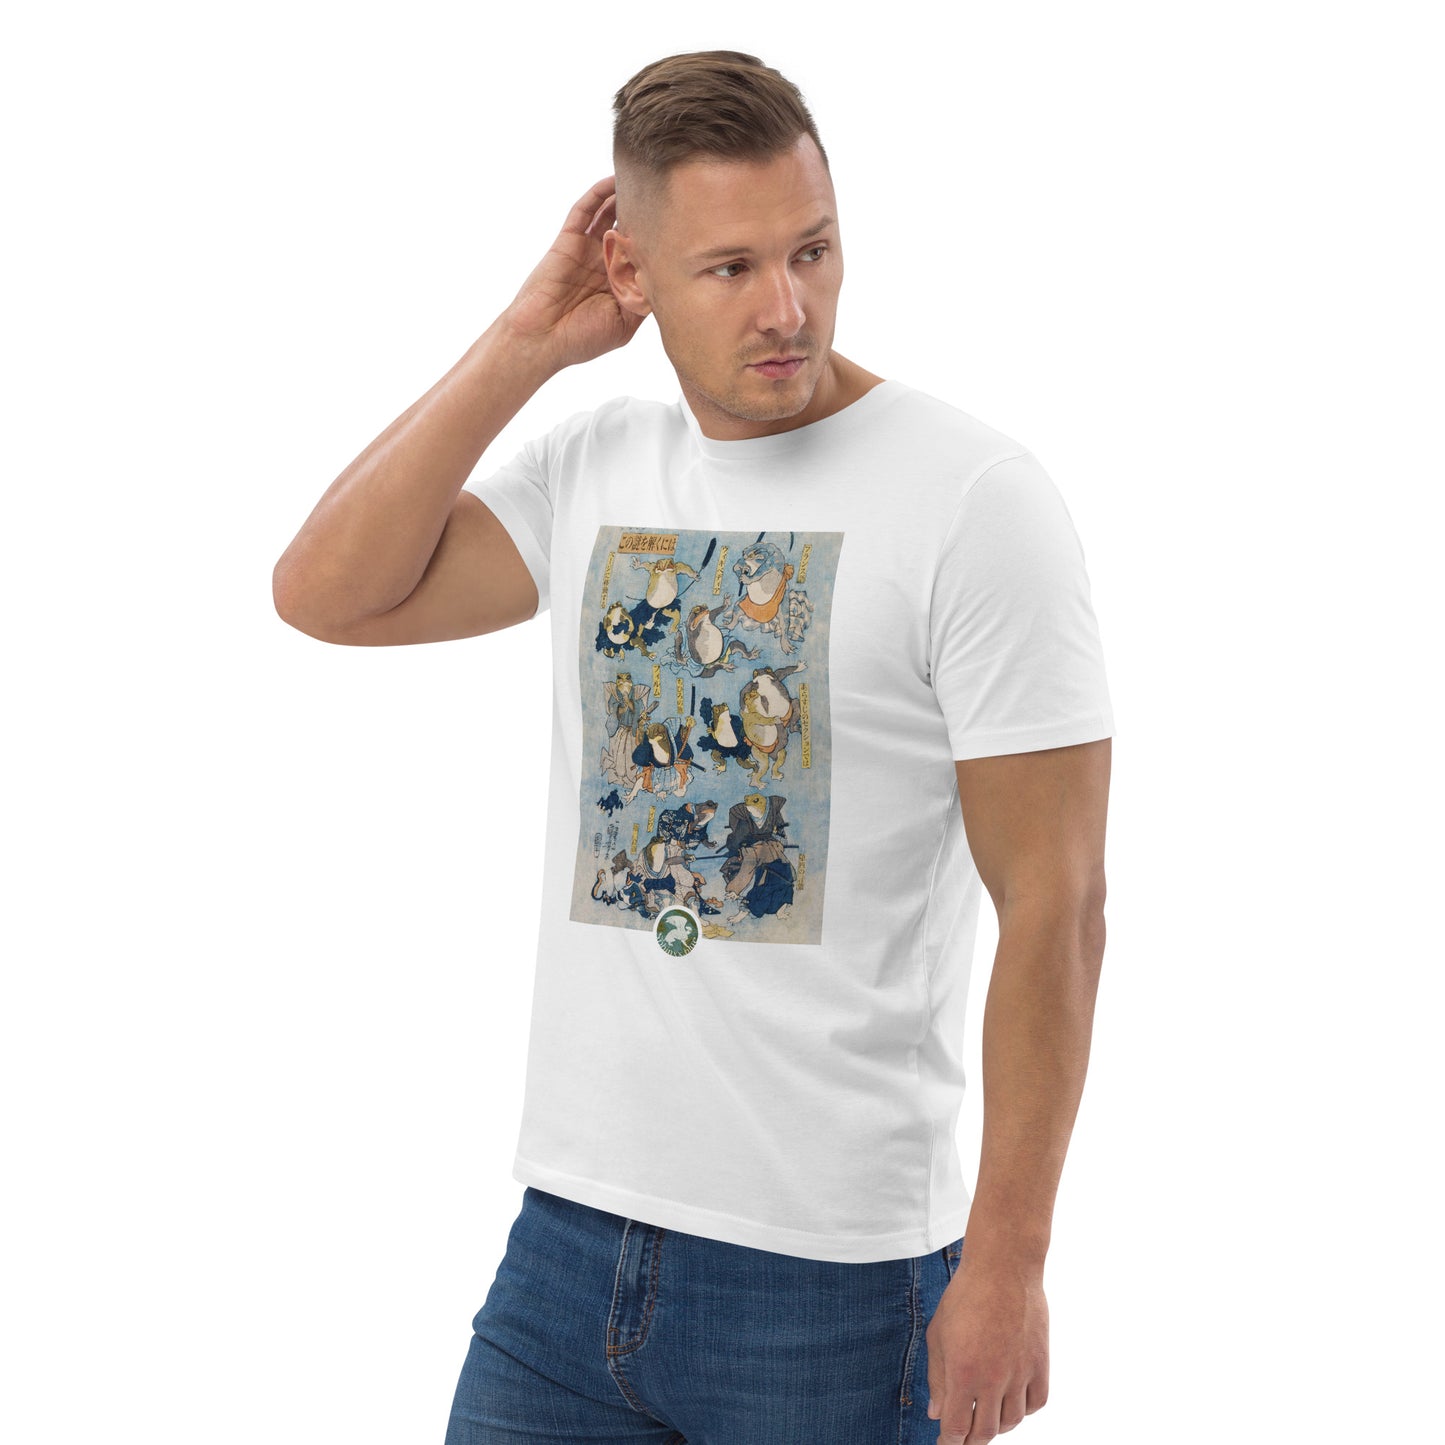 Énigme #18 - Aogaeru - T-shirt unisexe en coton biologique